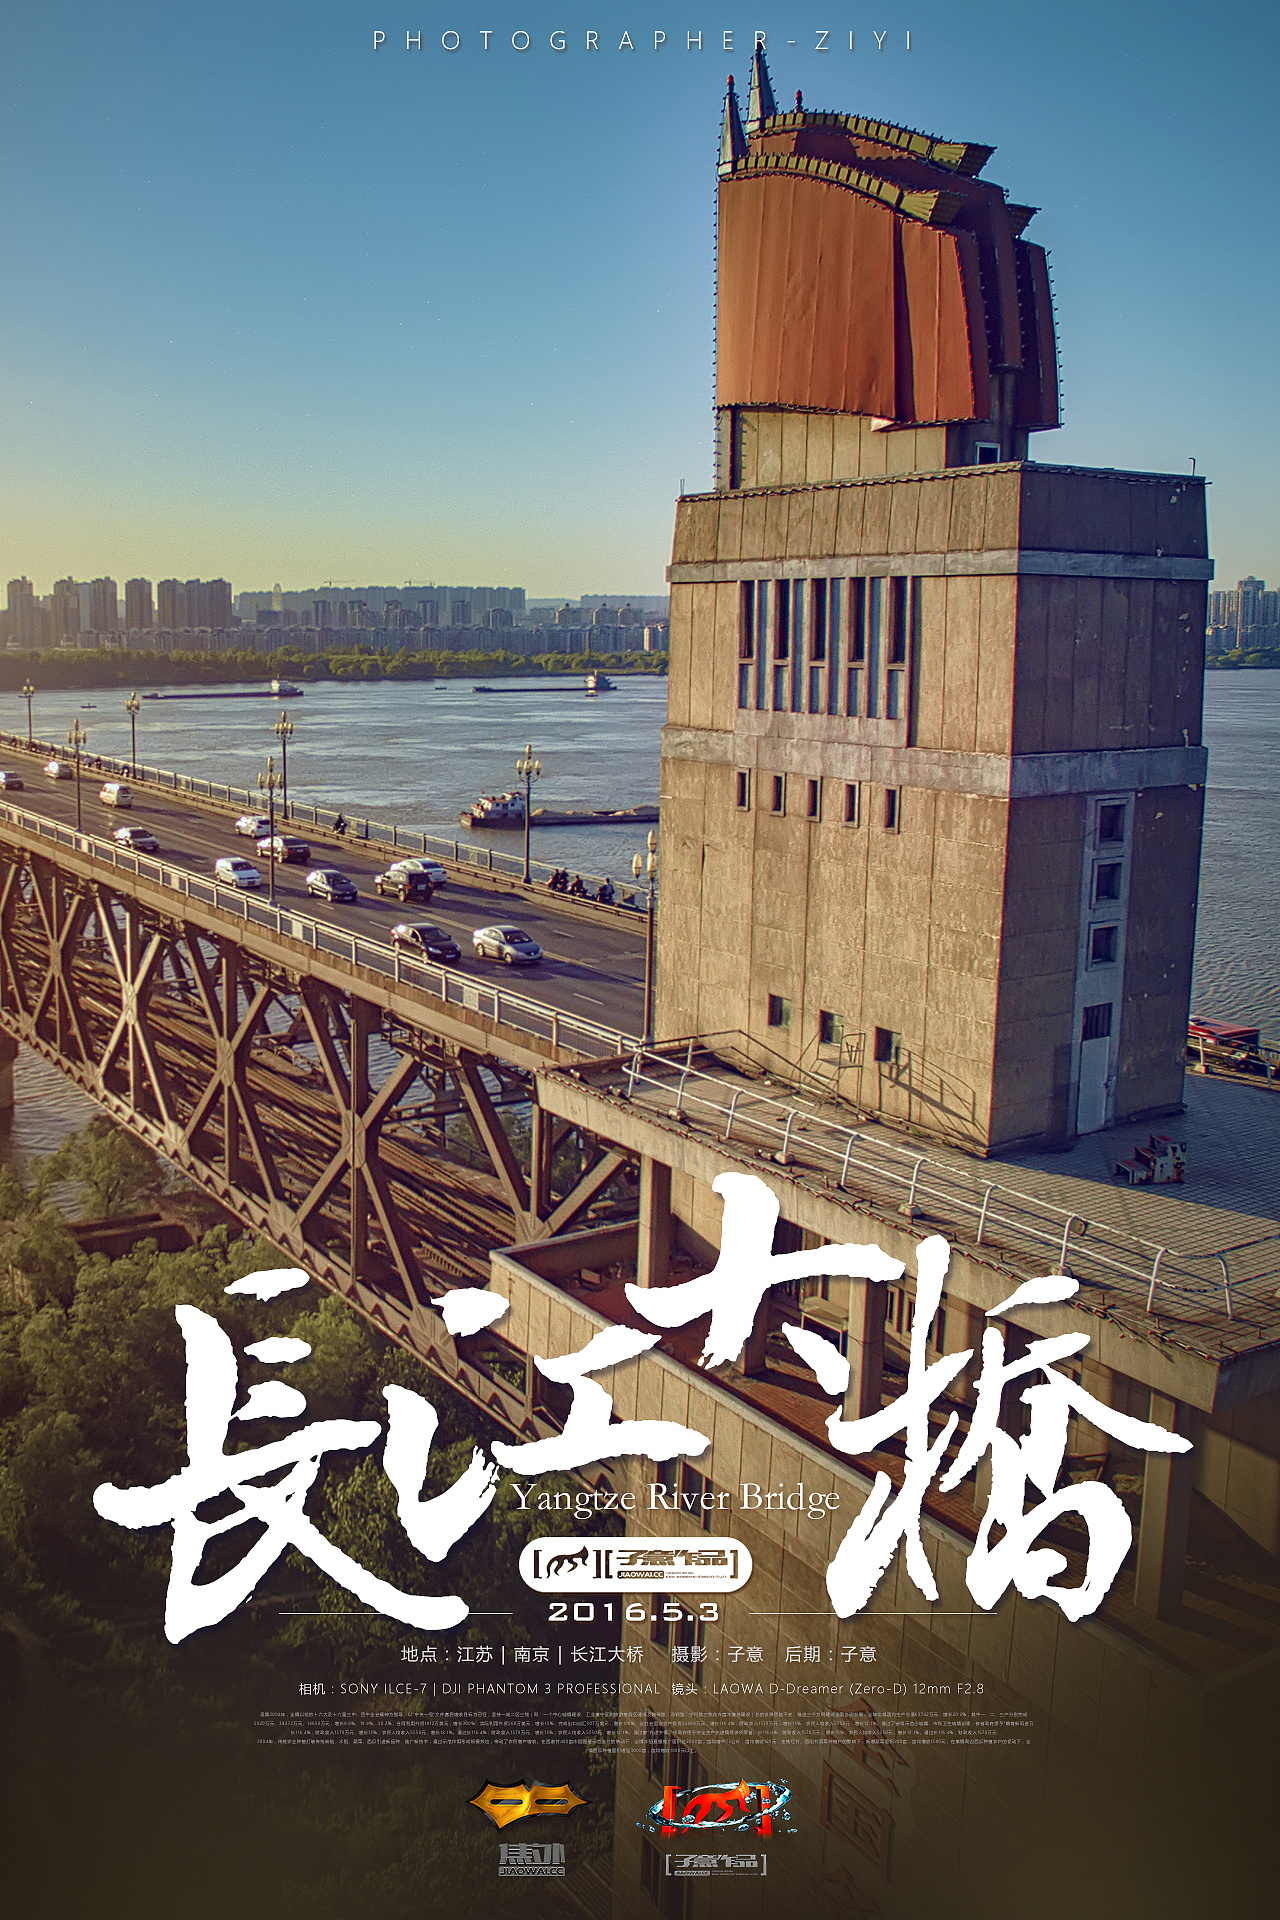 大桥记忆：南京长江大桥主题艺术作品及史料巡展-武汉美术馆